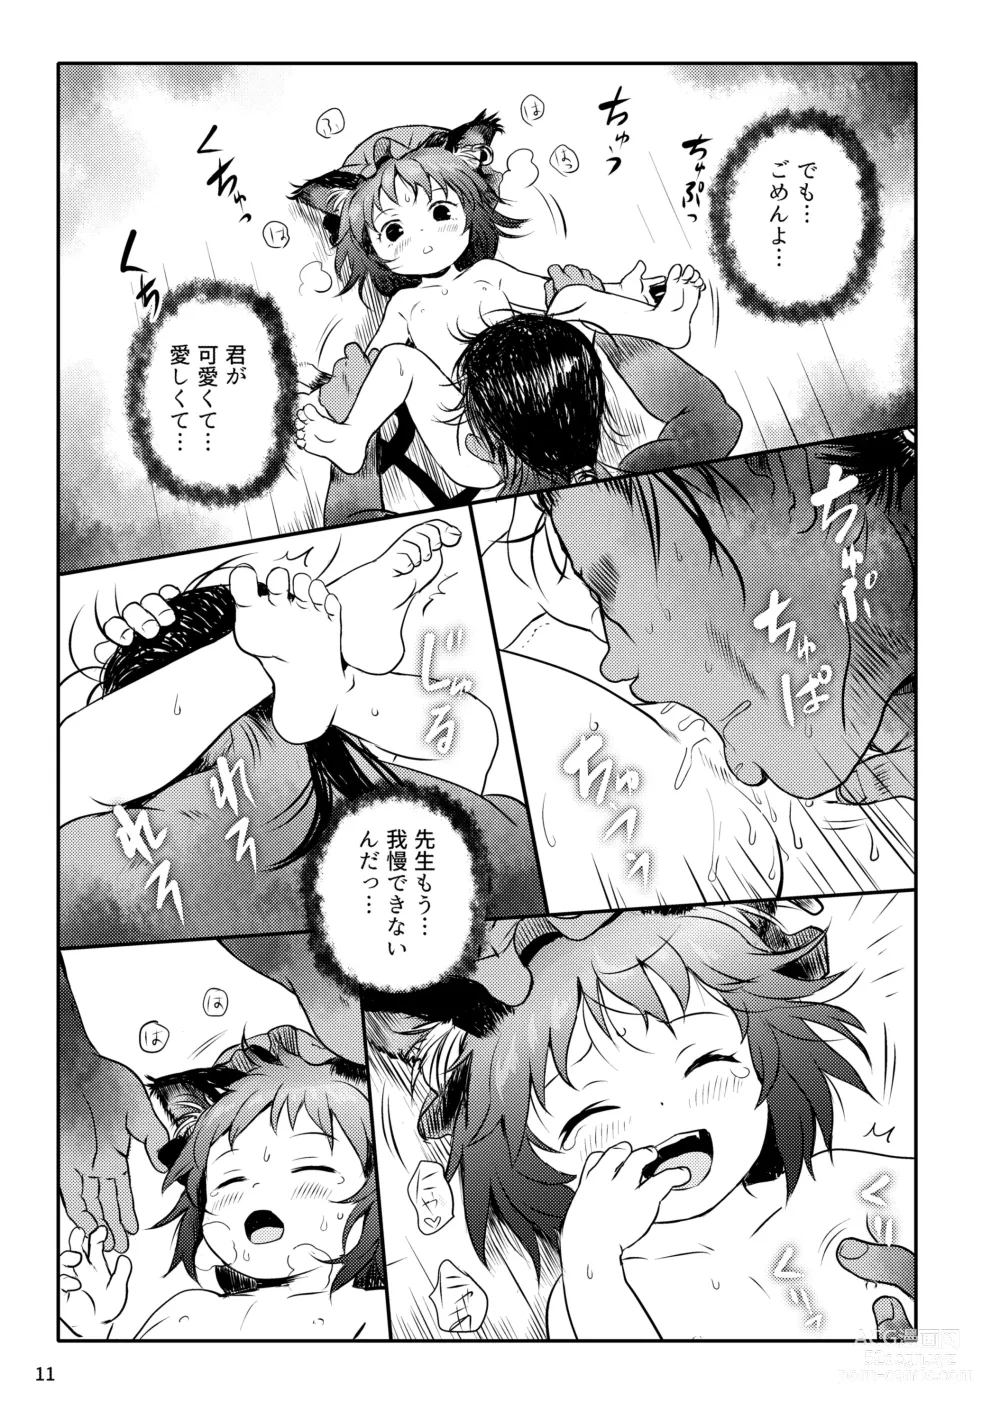 Page 11 of doujinshi Maseneko! Chen-chan!